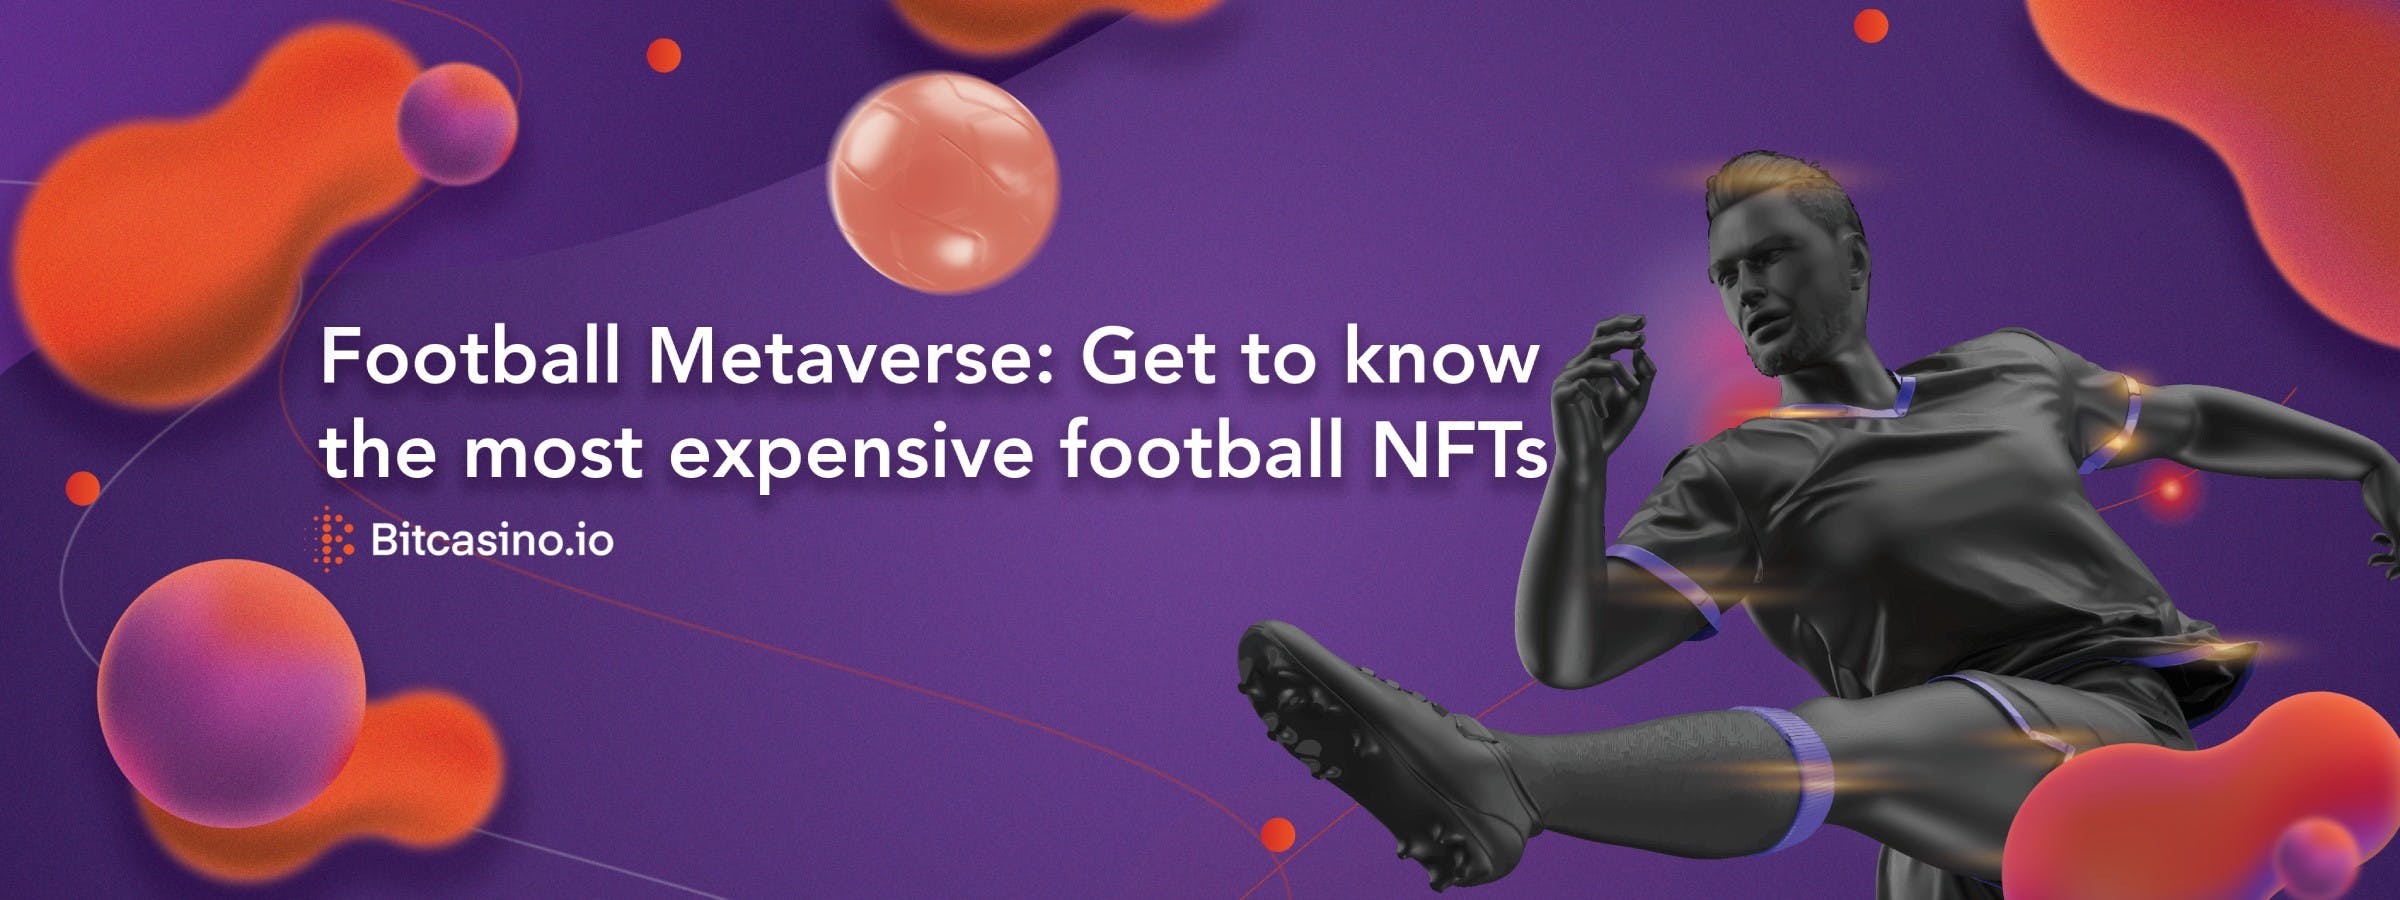 Metaverso del fútbol: Conoce los NFT de fútbol más caros 